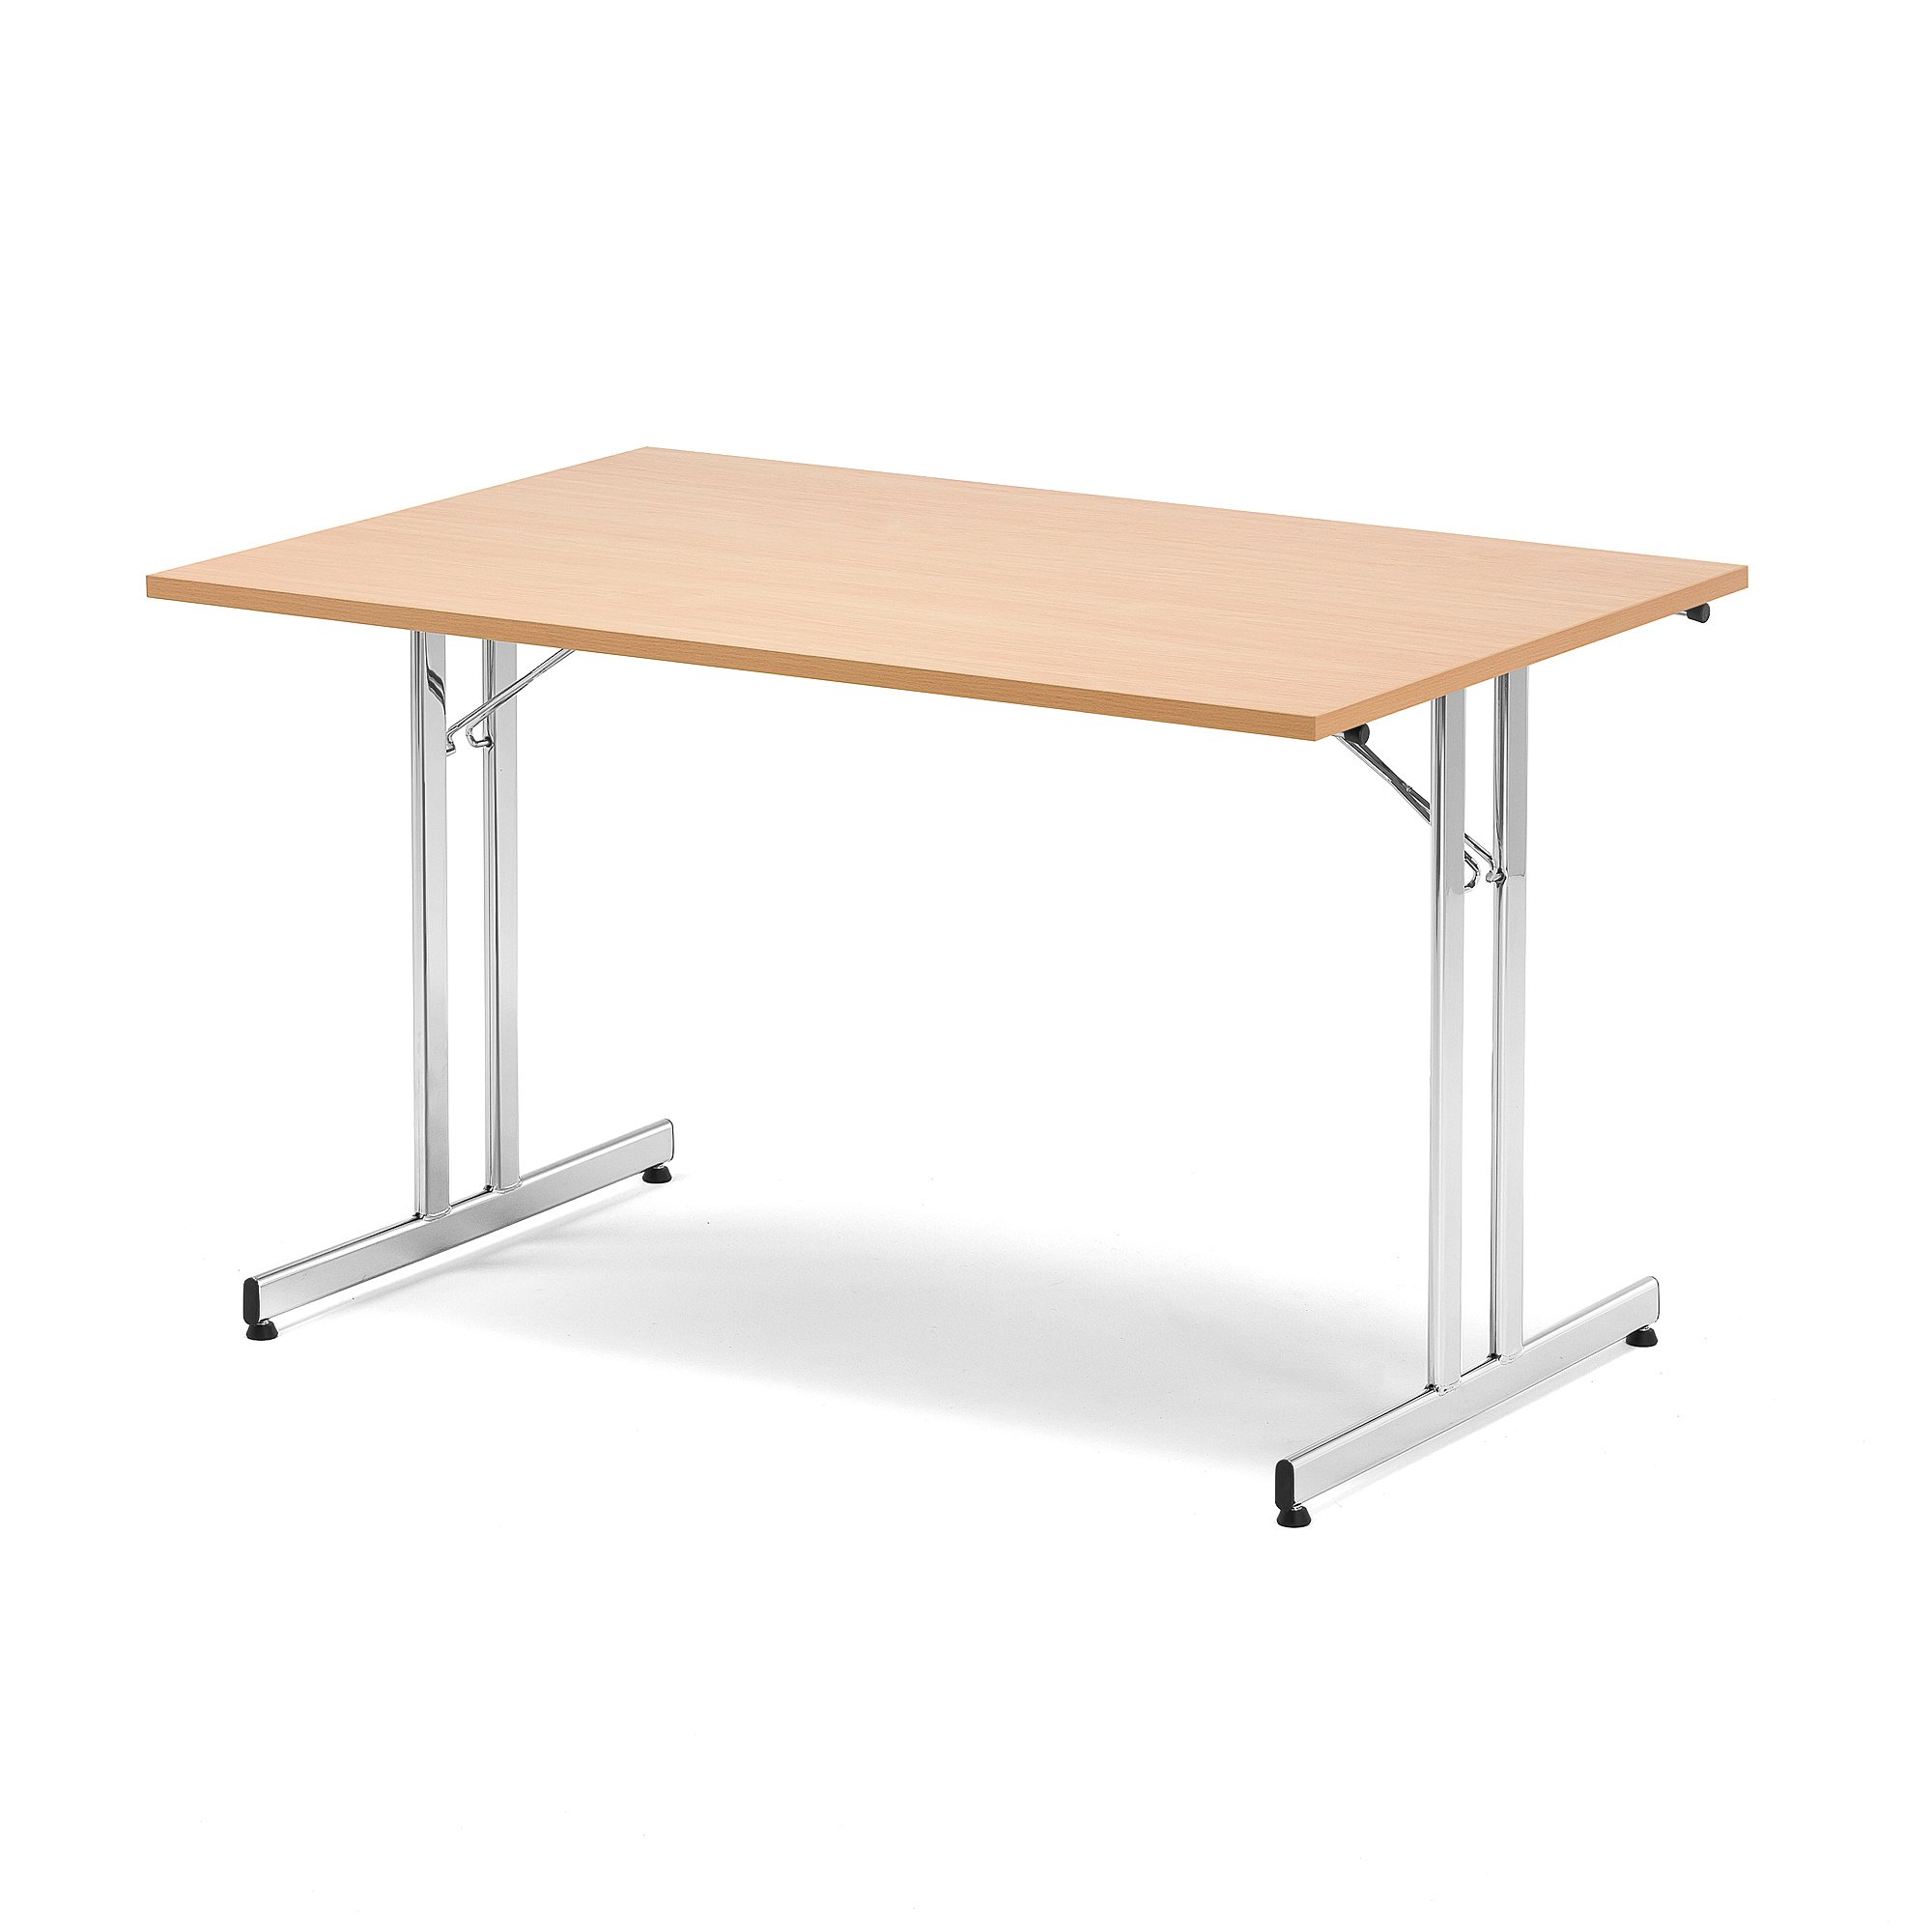 Skladací rokovací stôl EMILY, 1200x800 mm, bukový laminát/chróm